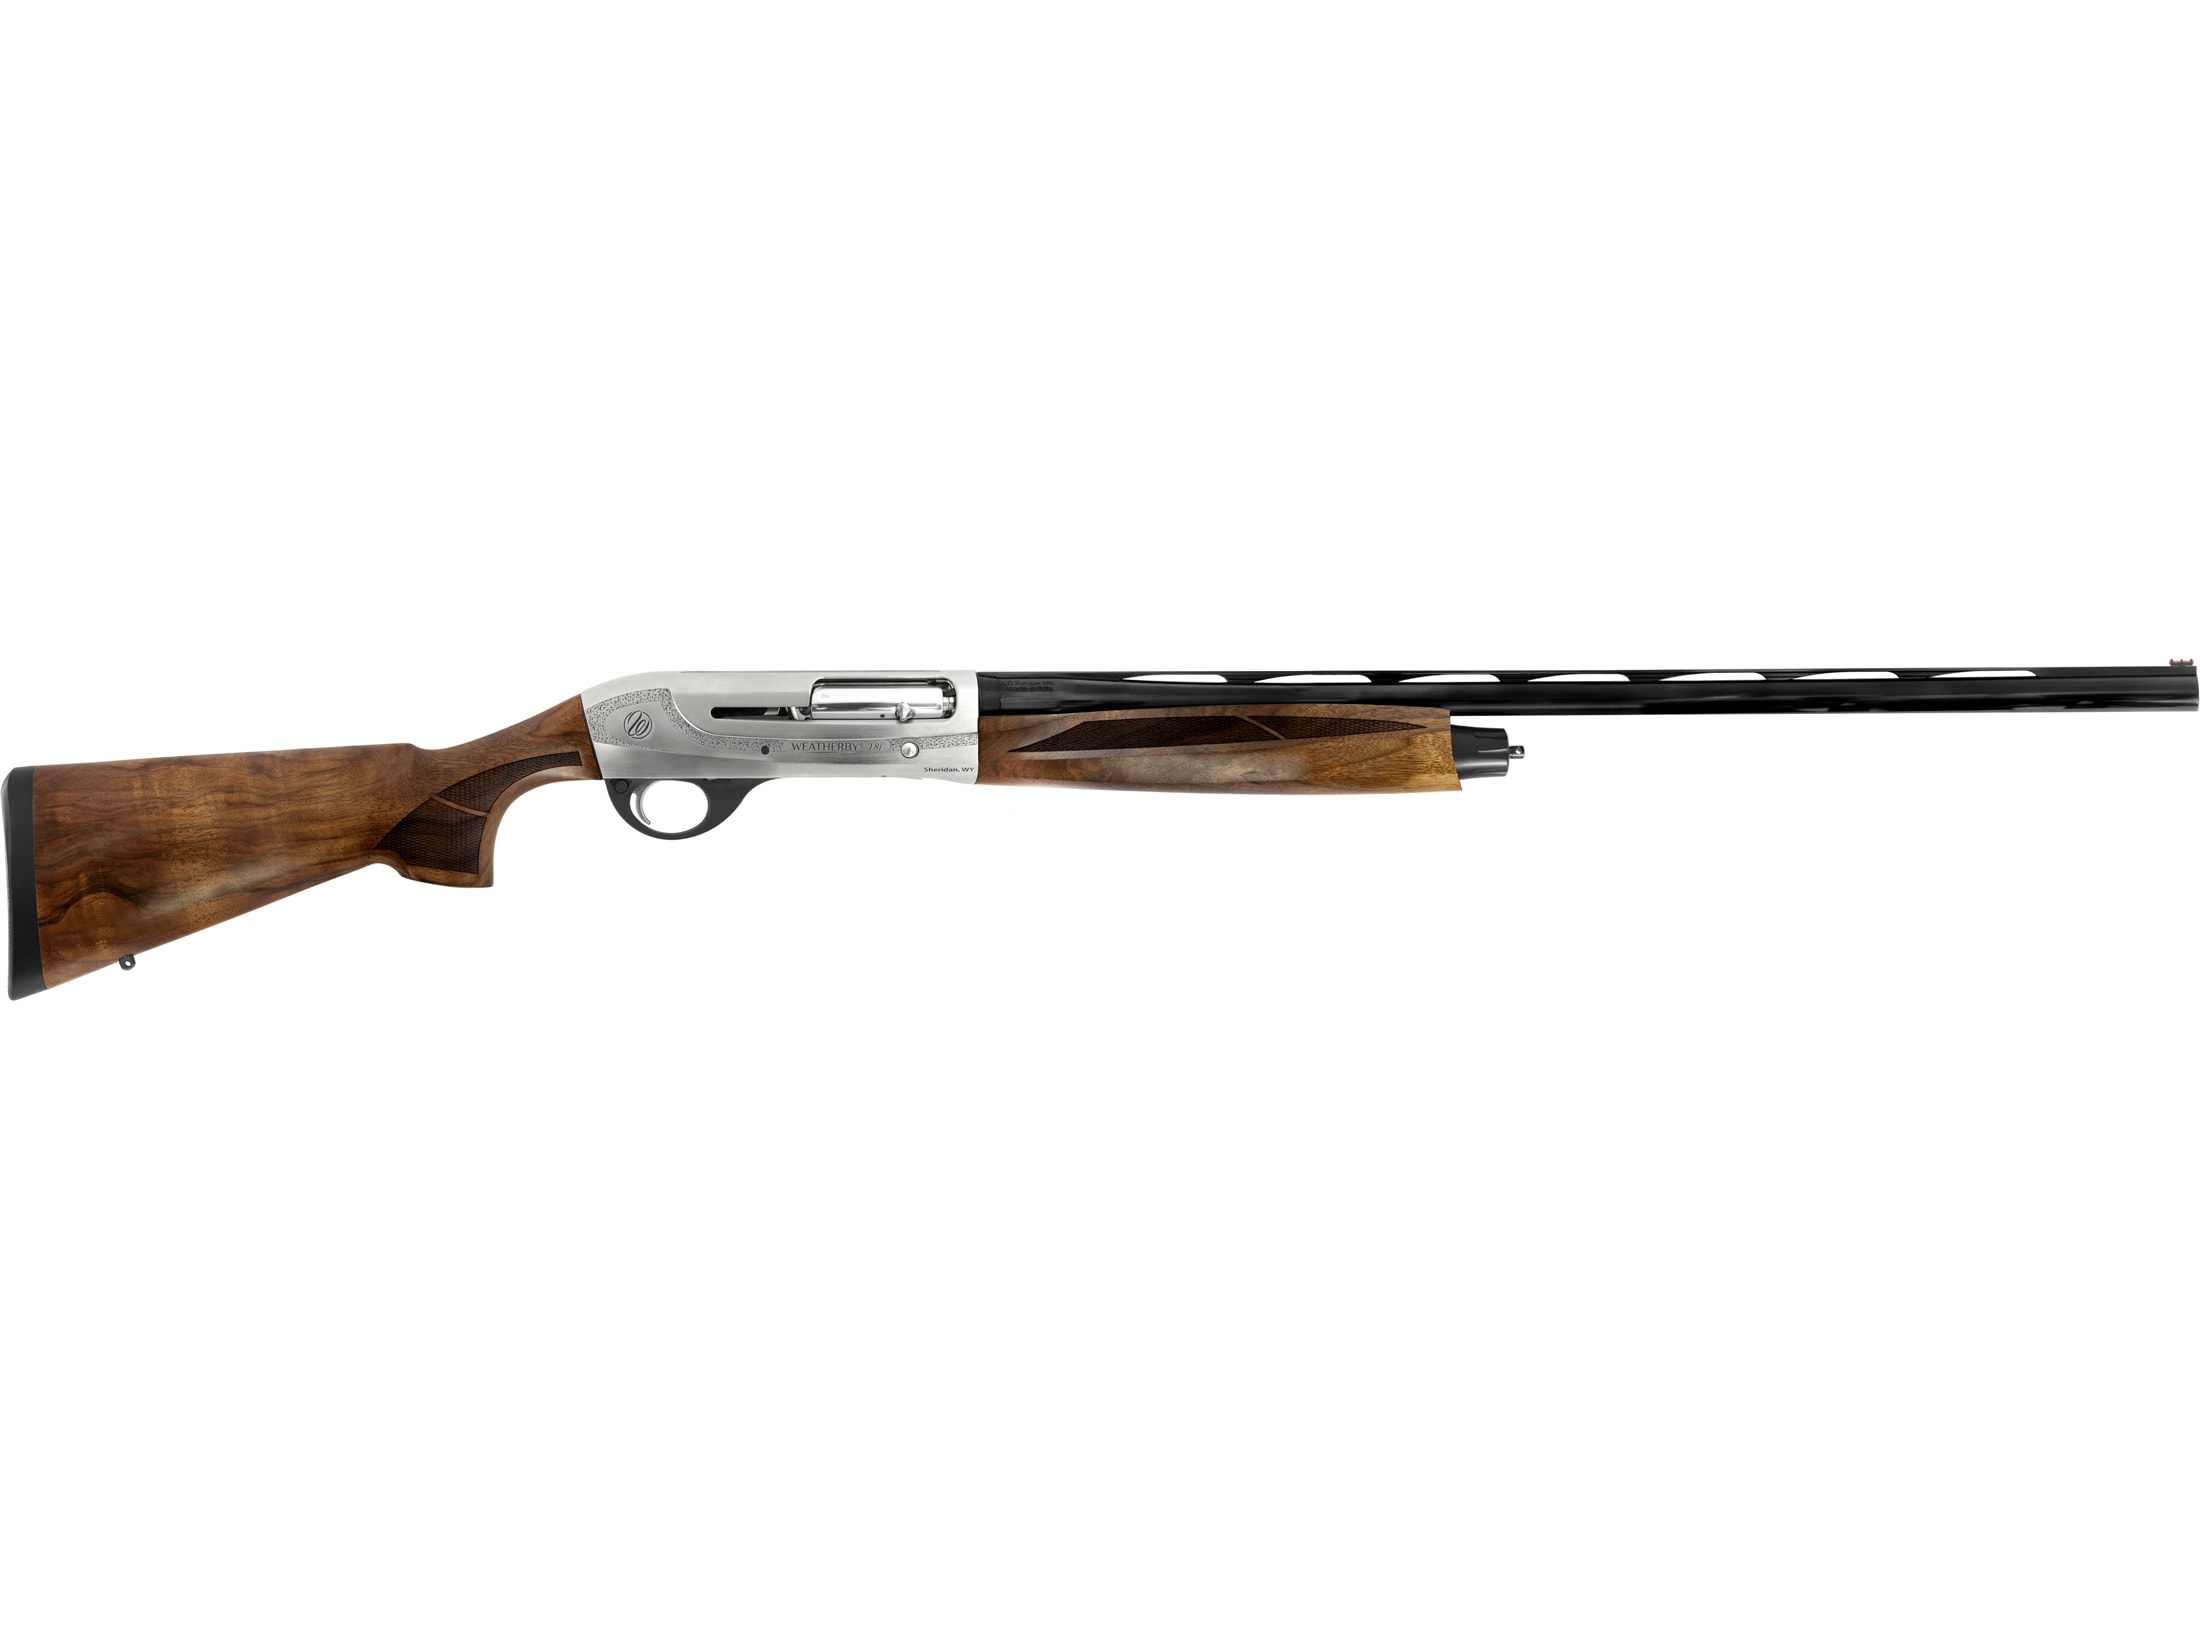 Image of Weatherby 18i Deluxe Gr2 Shotgun 12 Gauge 28" Barrel, Walnut Stock, Nickel Receiver